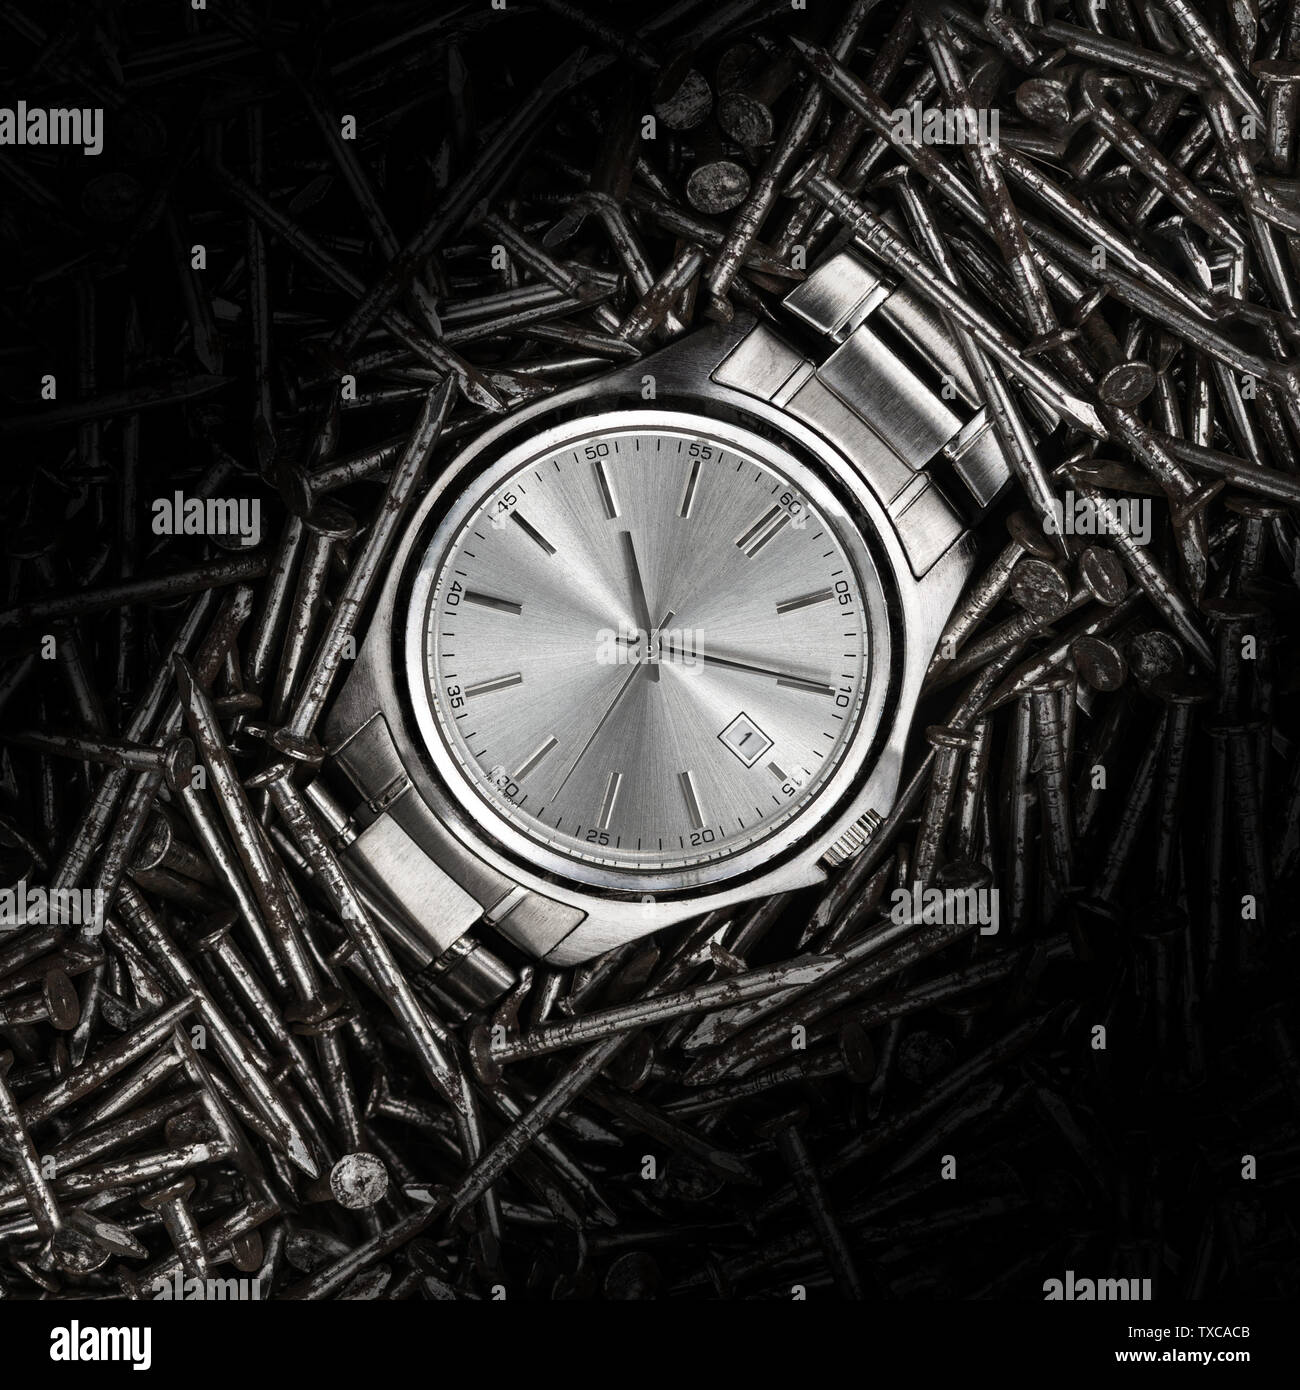 Una bella metallica in acciaio inox orologio da polso posa su un letto di costruzione metail chiodi closeup macro Foto Stock